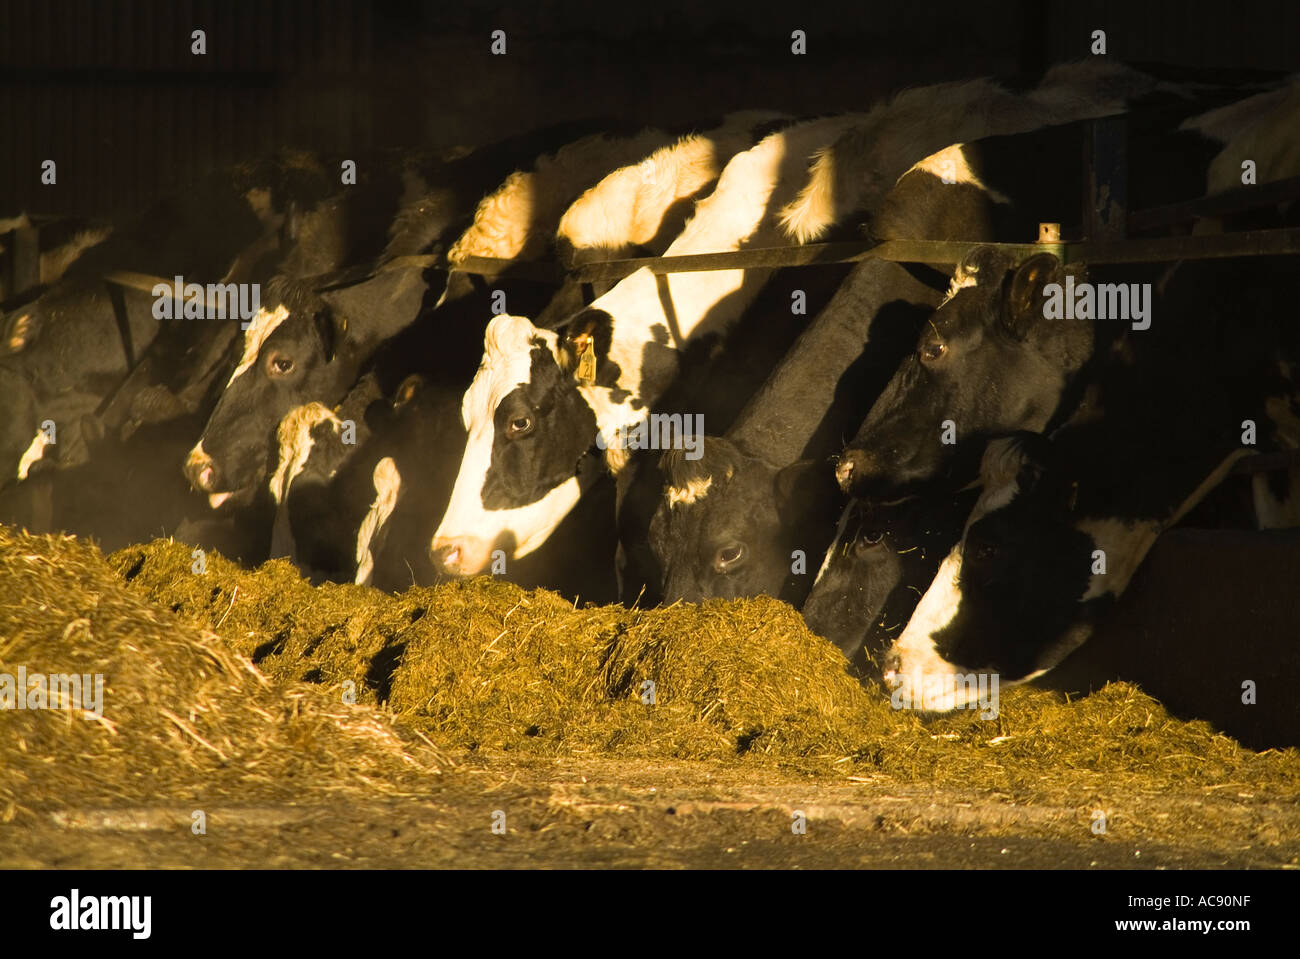 dh vaches de boeuf bêtes bétail de ferme Royaume-Uni troupeau de vaches se nourrissant en hiver fourrage grange animaux du royaume-uni bétail se nourrissant d'ensilage agricole nourrie Banque D'Images